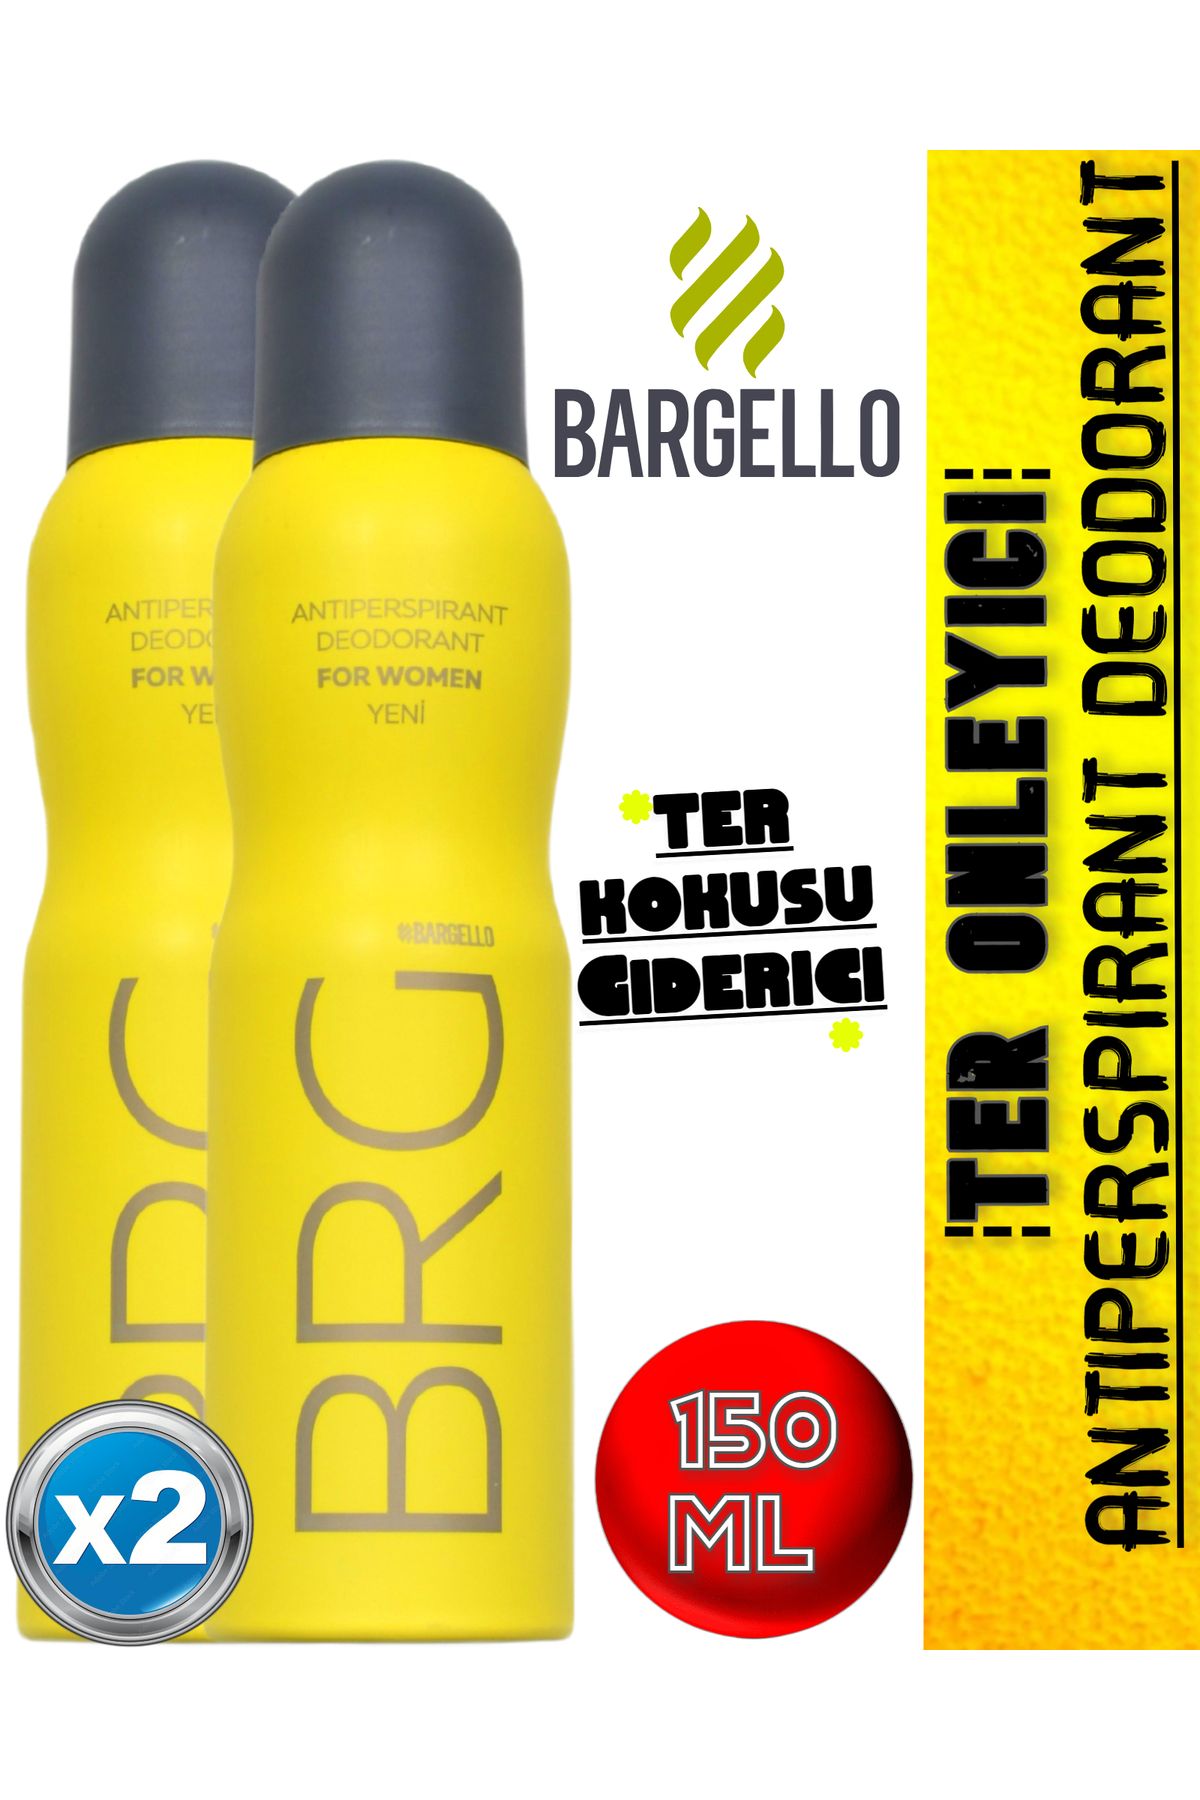 Bargello Kadın Ter Kokusu Giderici & Önleyici Antiperspirant Deodorant 150 Ml 2 Adet